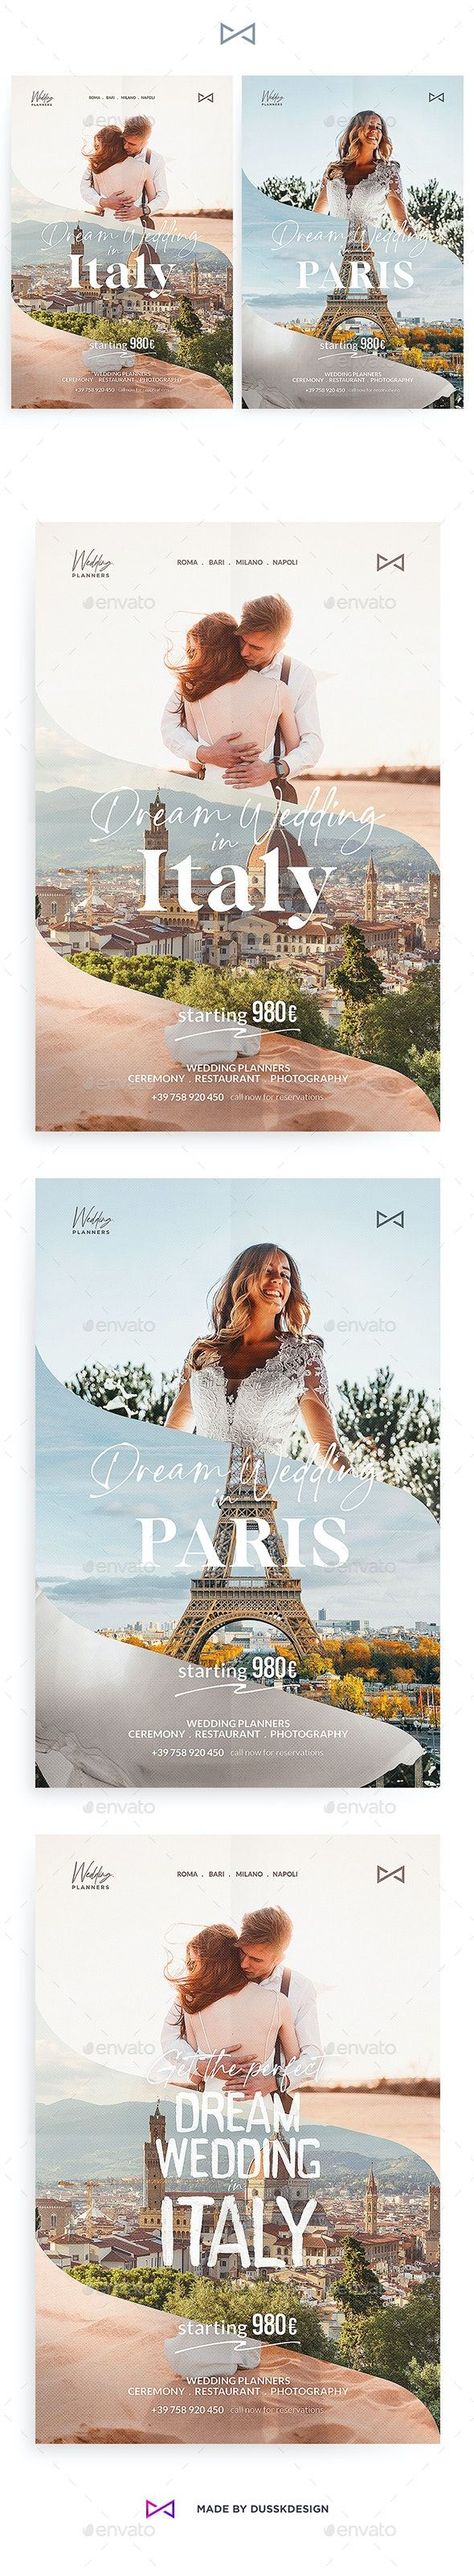 Wedding Planner Poster Wedding Planner Poster, Typography Ads, Wedding Graphic Design, Cat Design Illustration, Wedding Typography, Wedding Graphics, Travel Ads, Portfolio Website Design, Typography Layout